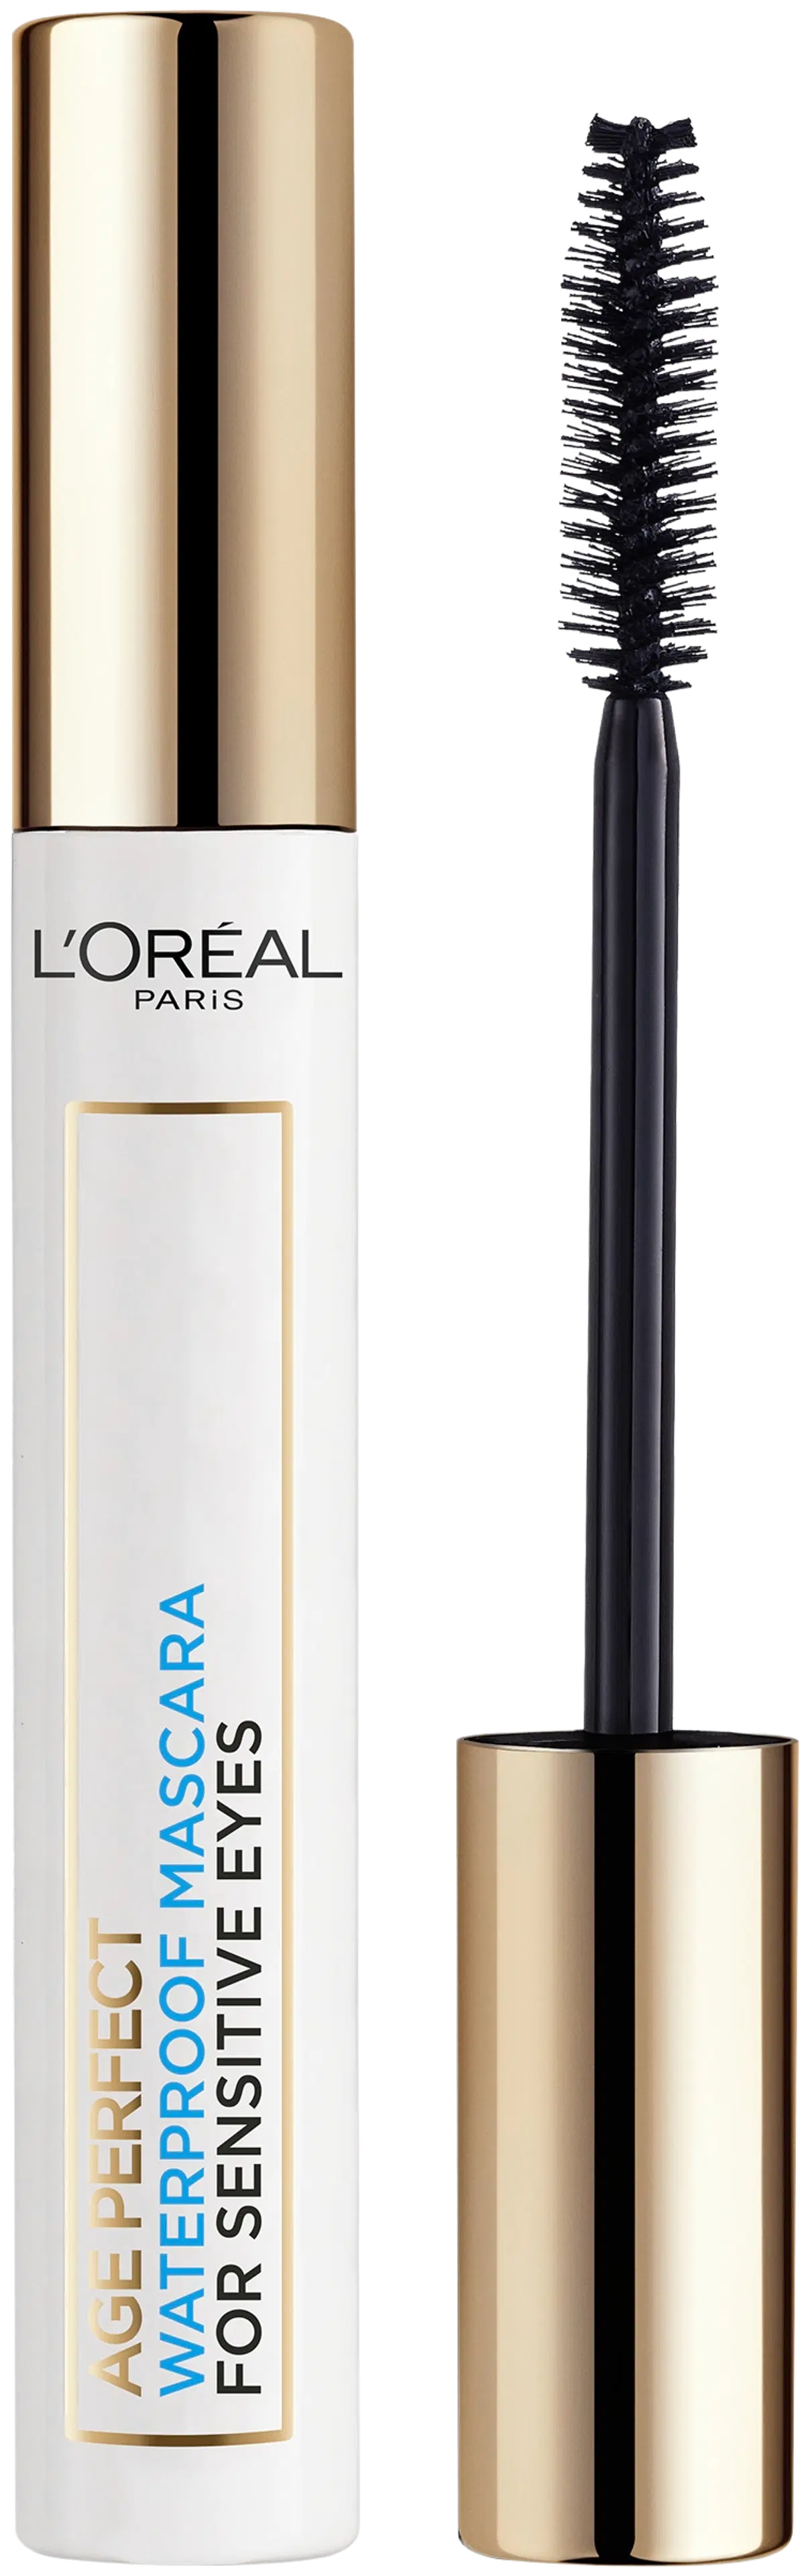 L'Oréal Paris Age Perfect vedenkestävä musta maskara herkille silmille 7,4ml